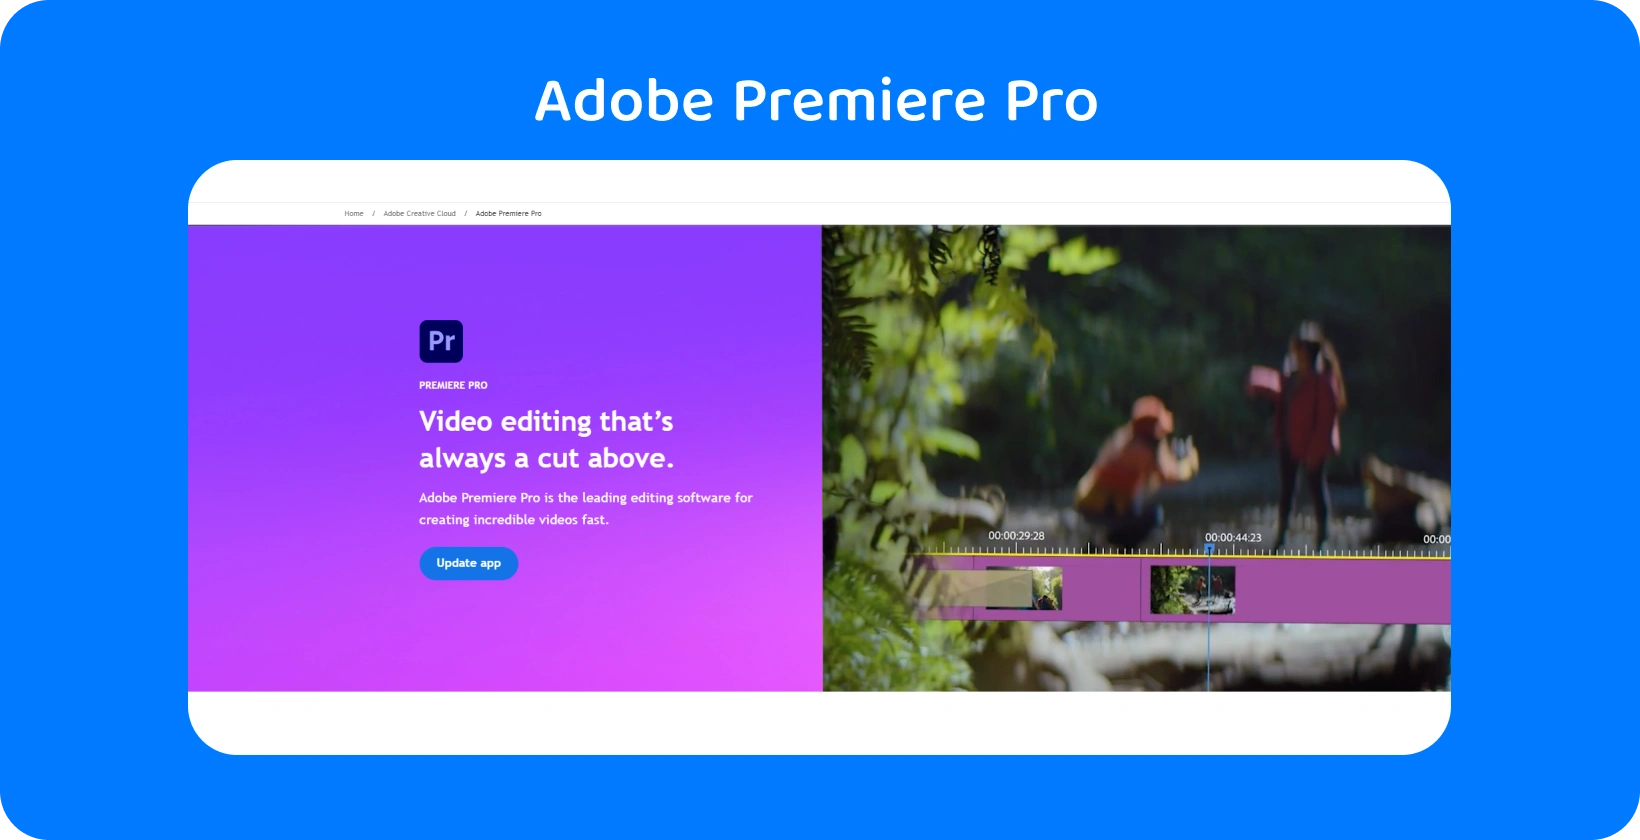 Adobe Premiere Pro інтерфейс, що відображає розширені можливості редагування відео, ідеально підходить для швидкого та точного редагування.